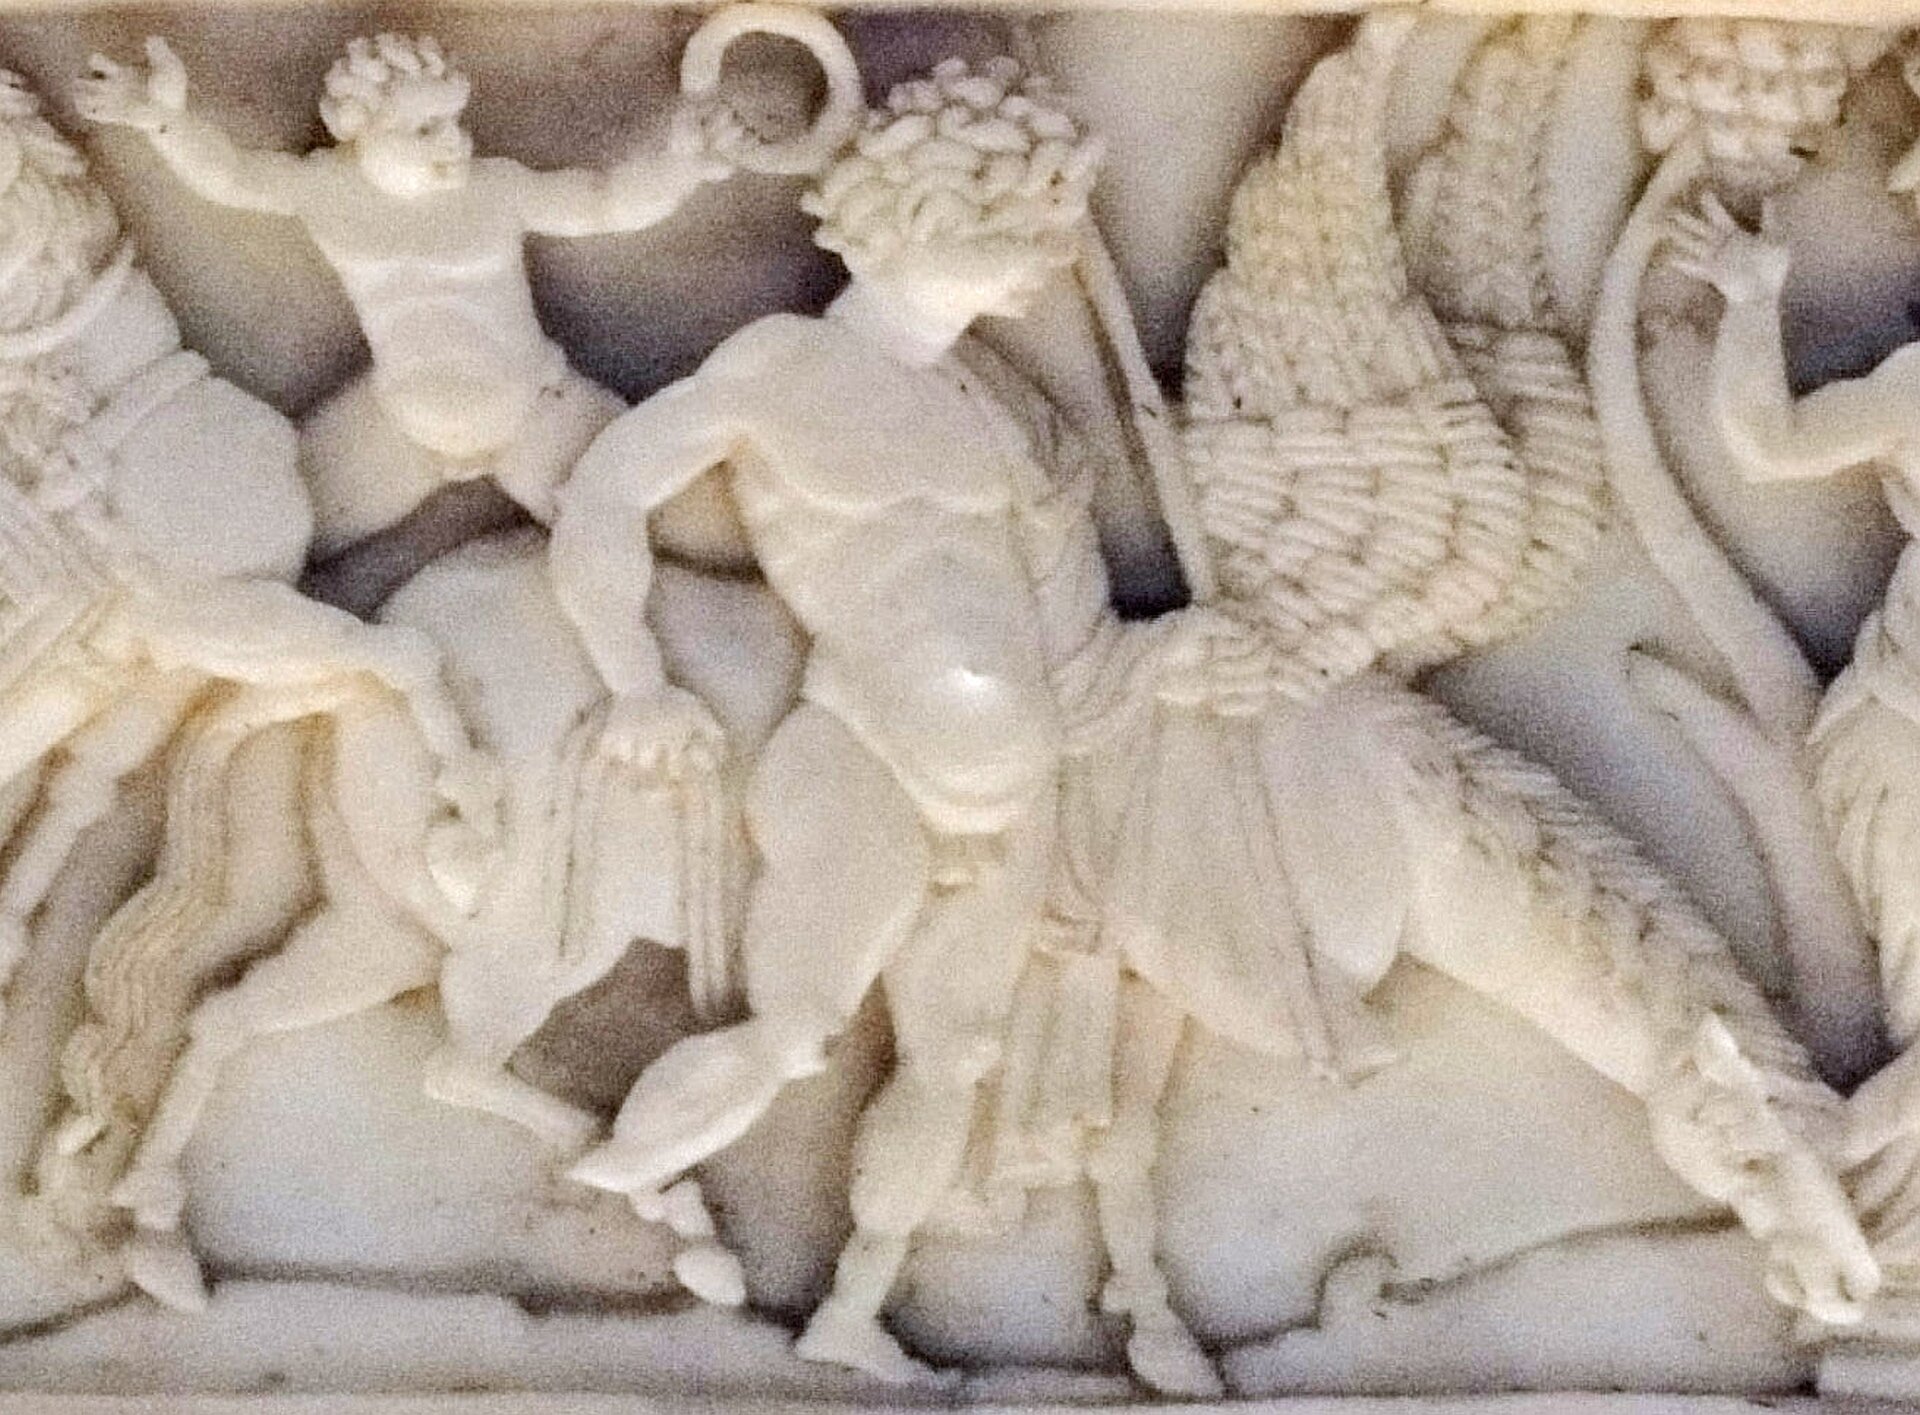 Ilustracja przedstawia detal z sarkofagu Veroli, na którym widoczny jest Bellerofont z Pegazem. Mężczyzna ma krótkie kręcone włosy i stoi obok Pegaza, który pije wodę. Fragment rzeźby jest wykonany z białego materiału.